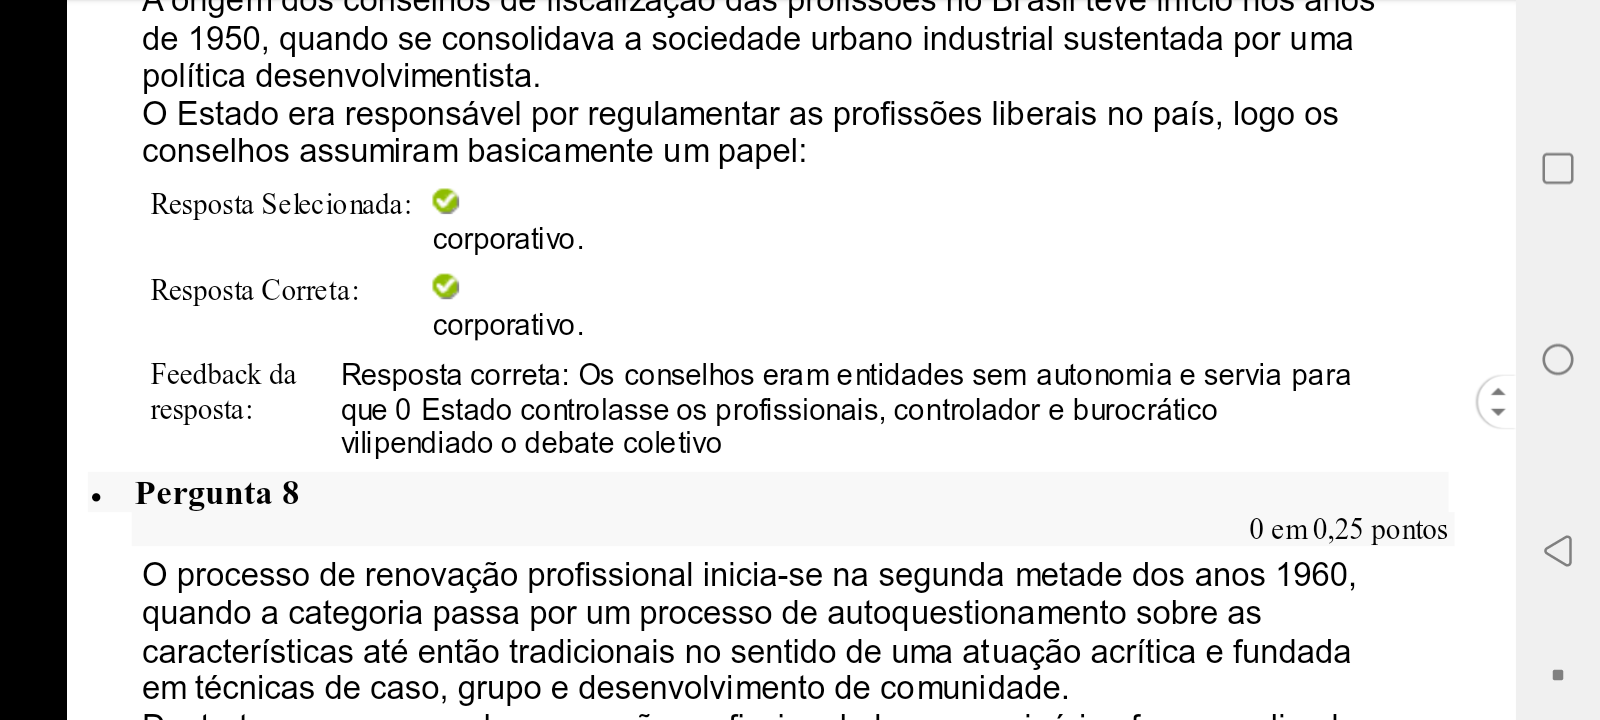 Faculdade Formacao Socio Historica Do Brasil Acessar Turma Turma Formacao Socio Historica Do 4296